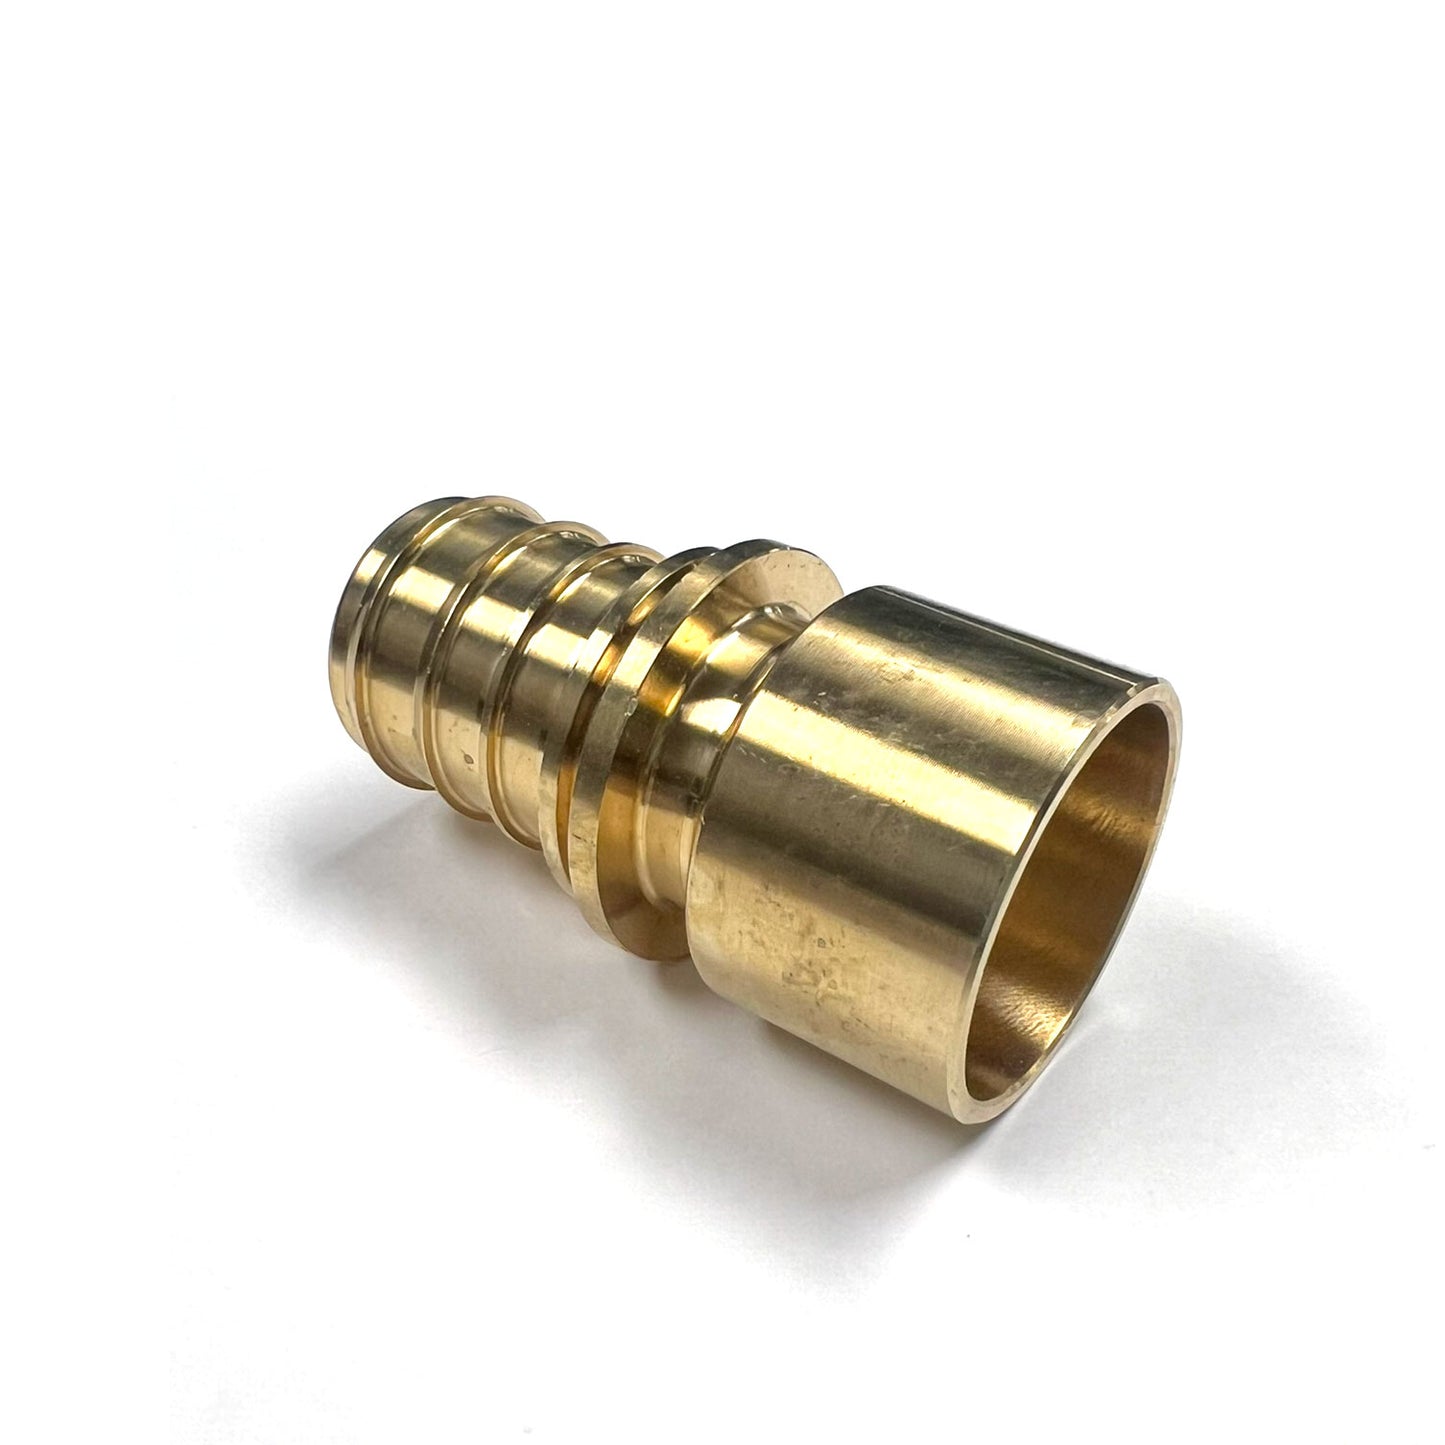 317193-001 - 1-1/4" x 1-1/4" C Female EVERLOC+ LF Brass Copper Adapter